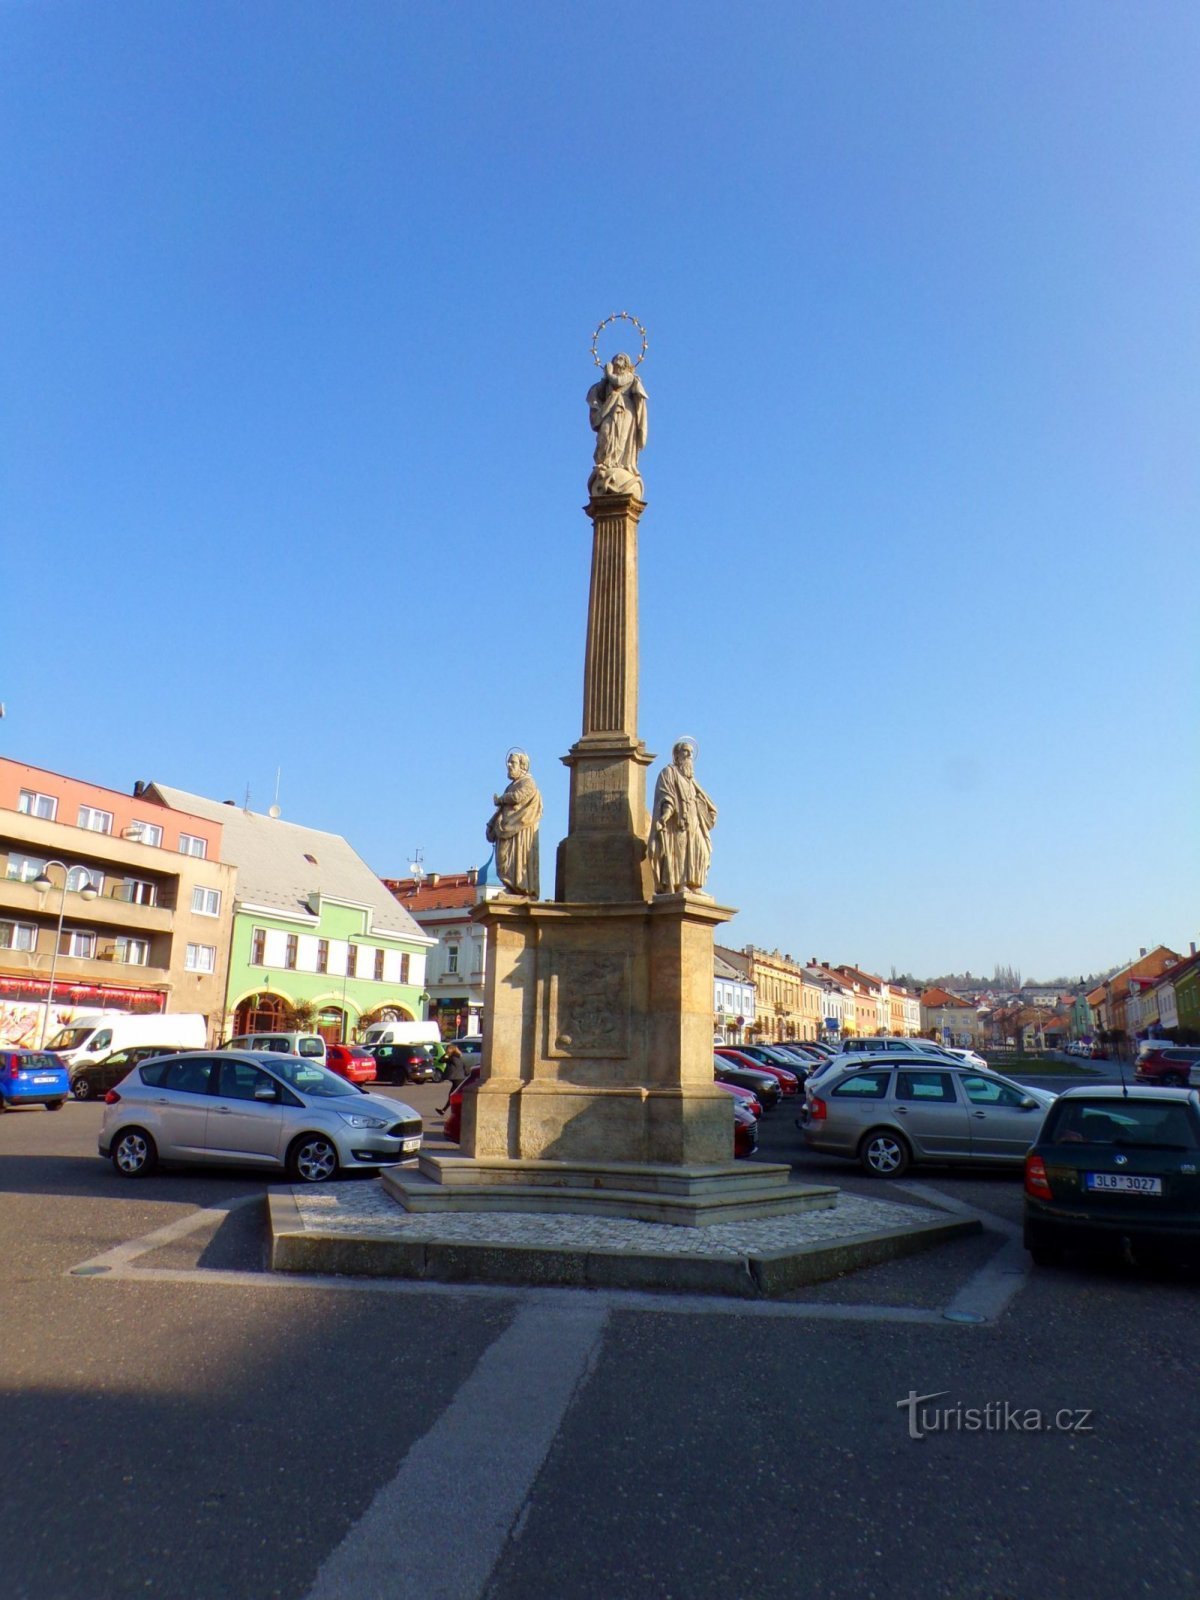 Marian column (Hořice, 25.3.2022/XNUMX/XNUMX)